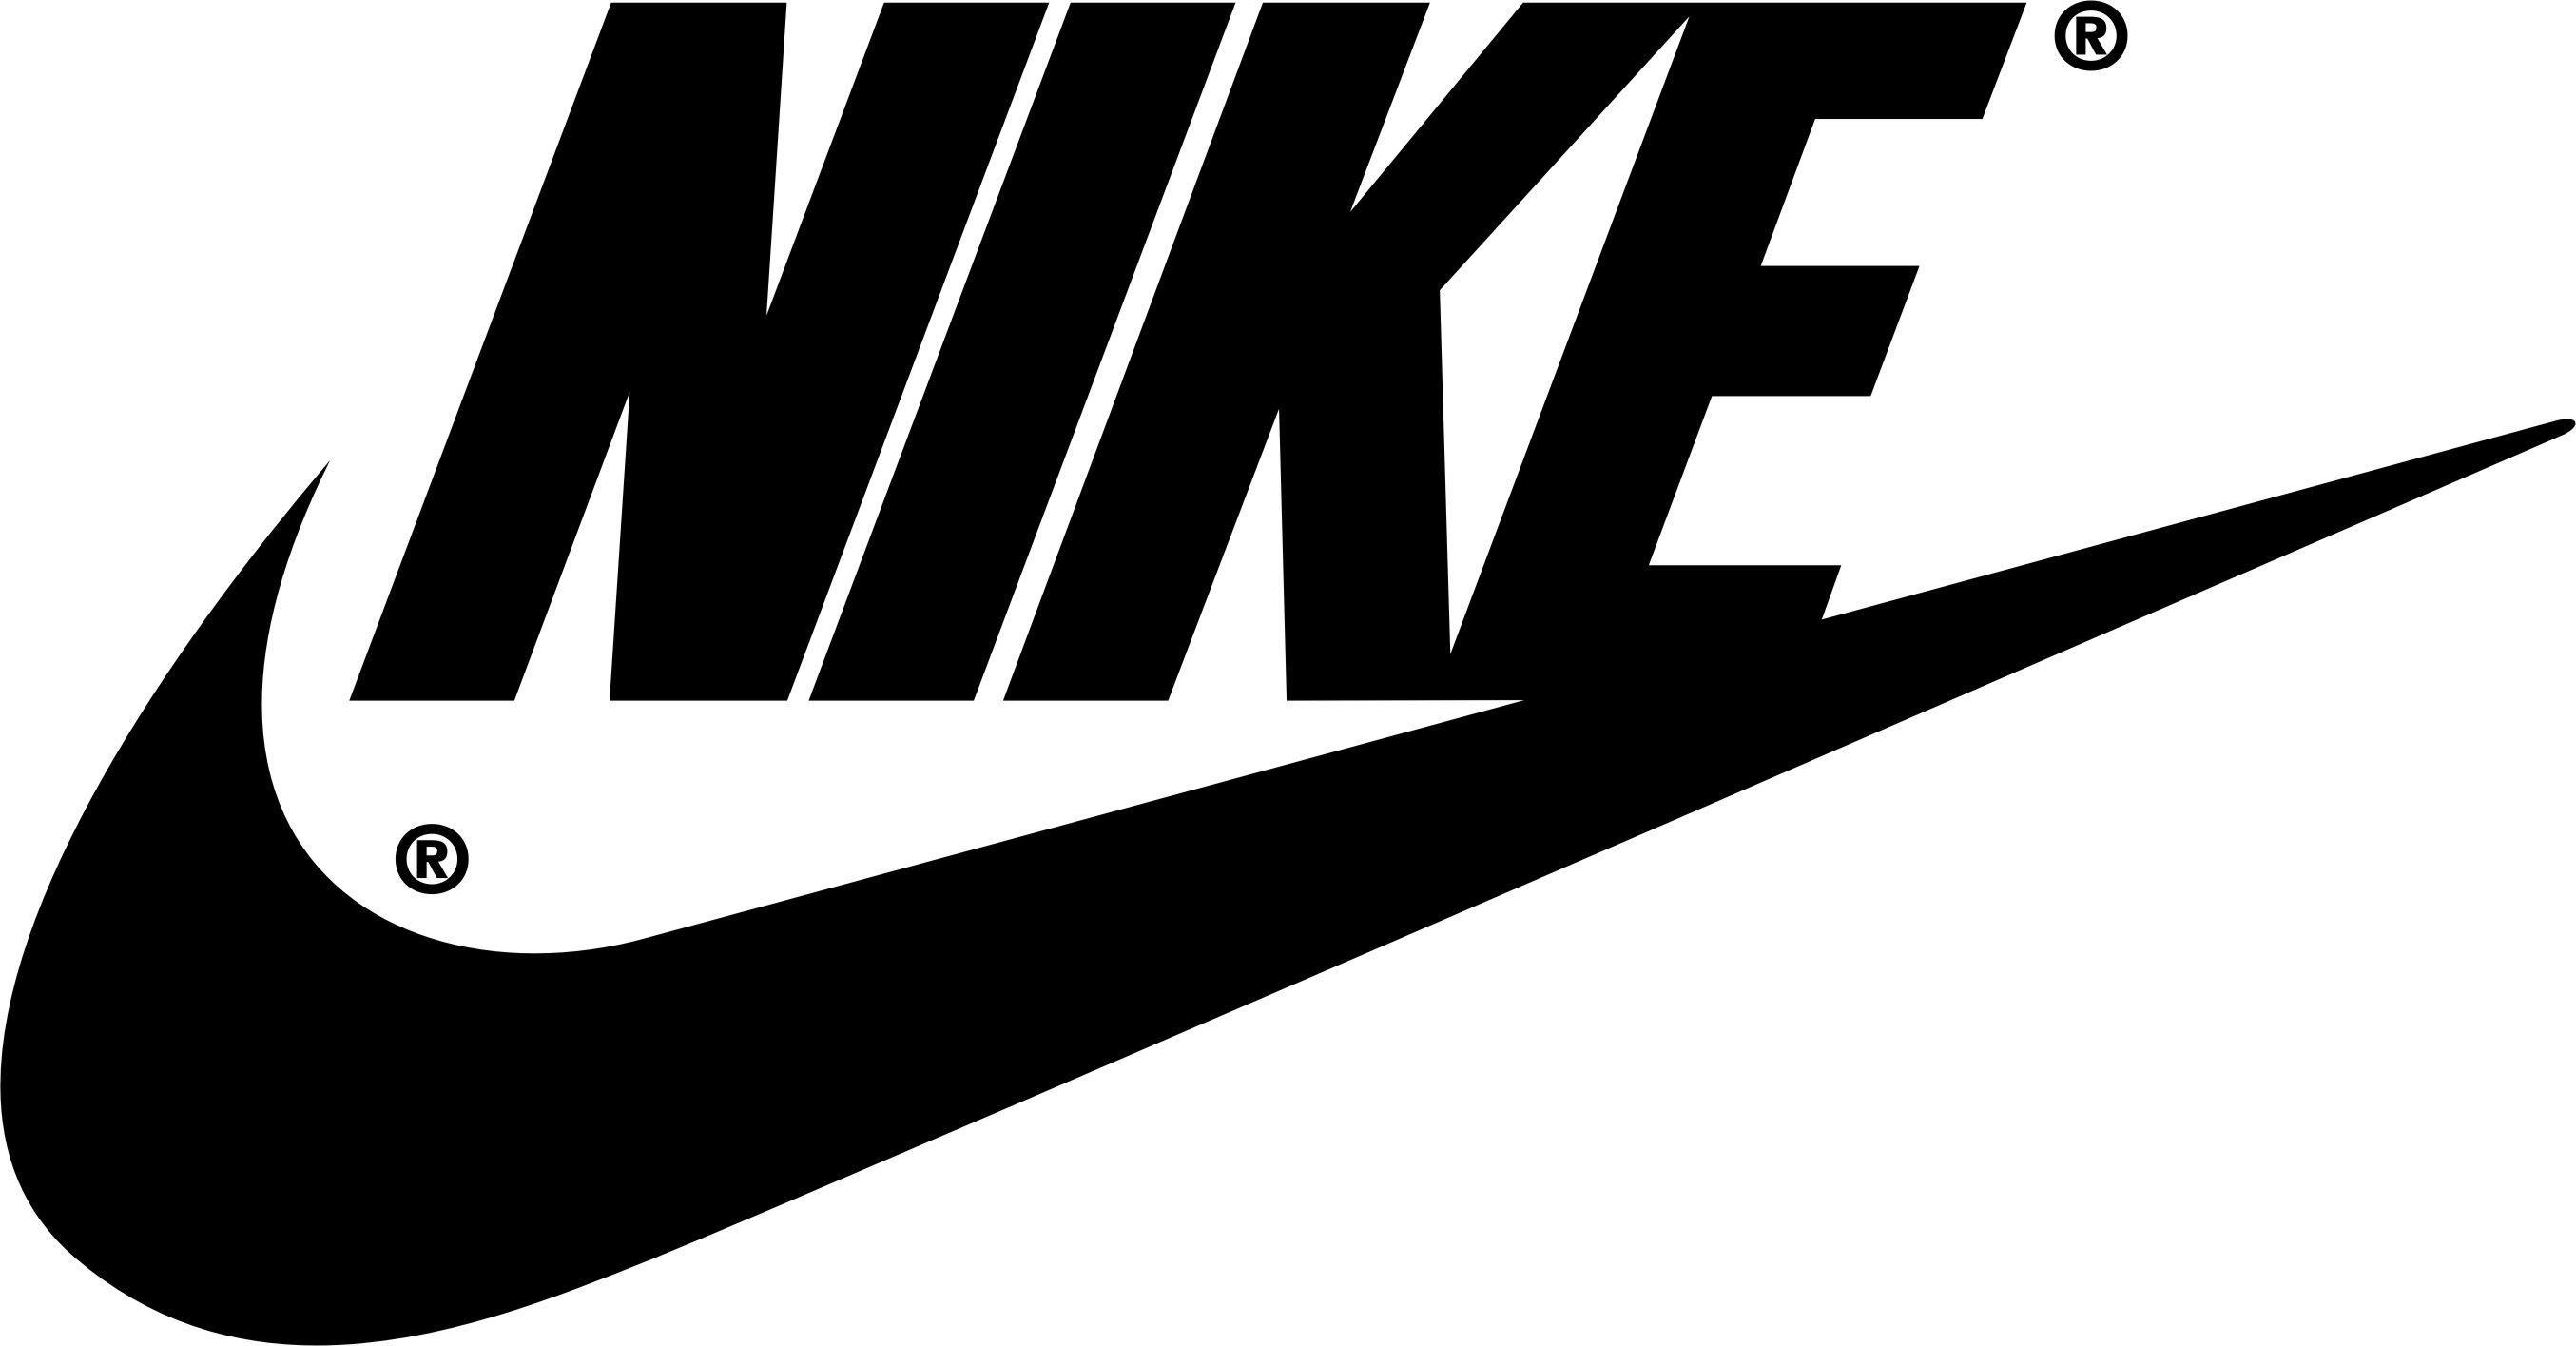 Chiêm ngưỡng bộ logo Nike với nền đen đầy huyền bí, bạn sẽ cảm nhận được sức mạnh và phong cách độc đáo mà thương hiệu này mang lại. Hãy chuẩn bị để bất ngờ với hình ảnh đẹp đến ngỡ ngàng của Nike logo trên nền đen!